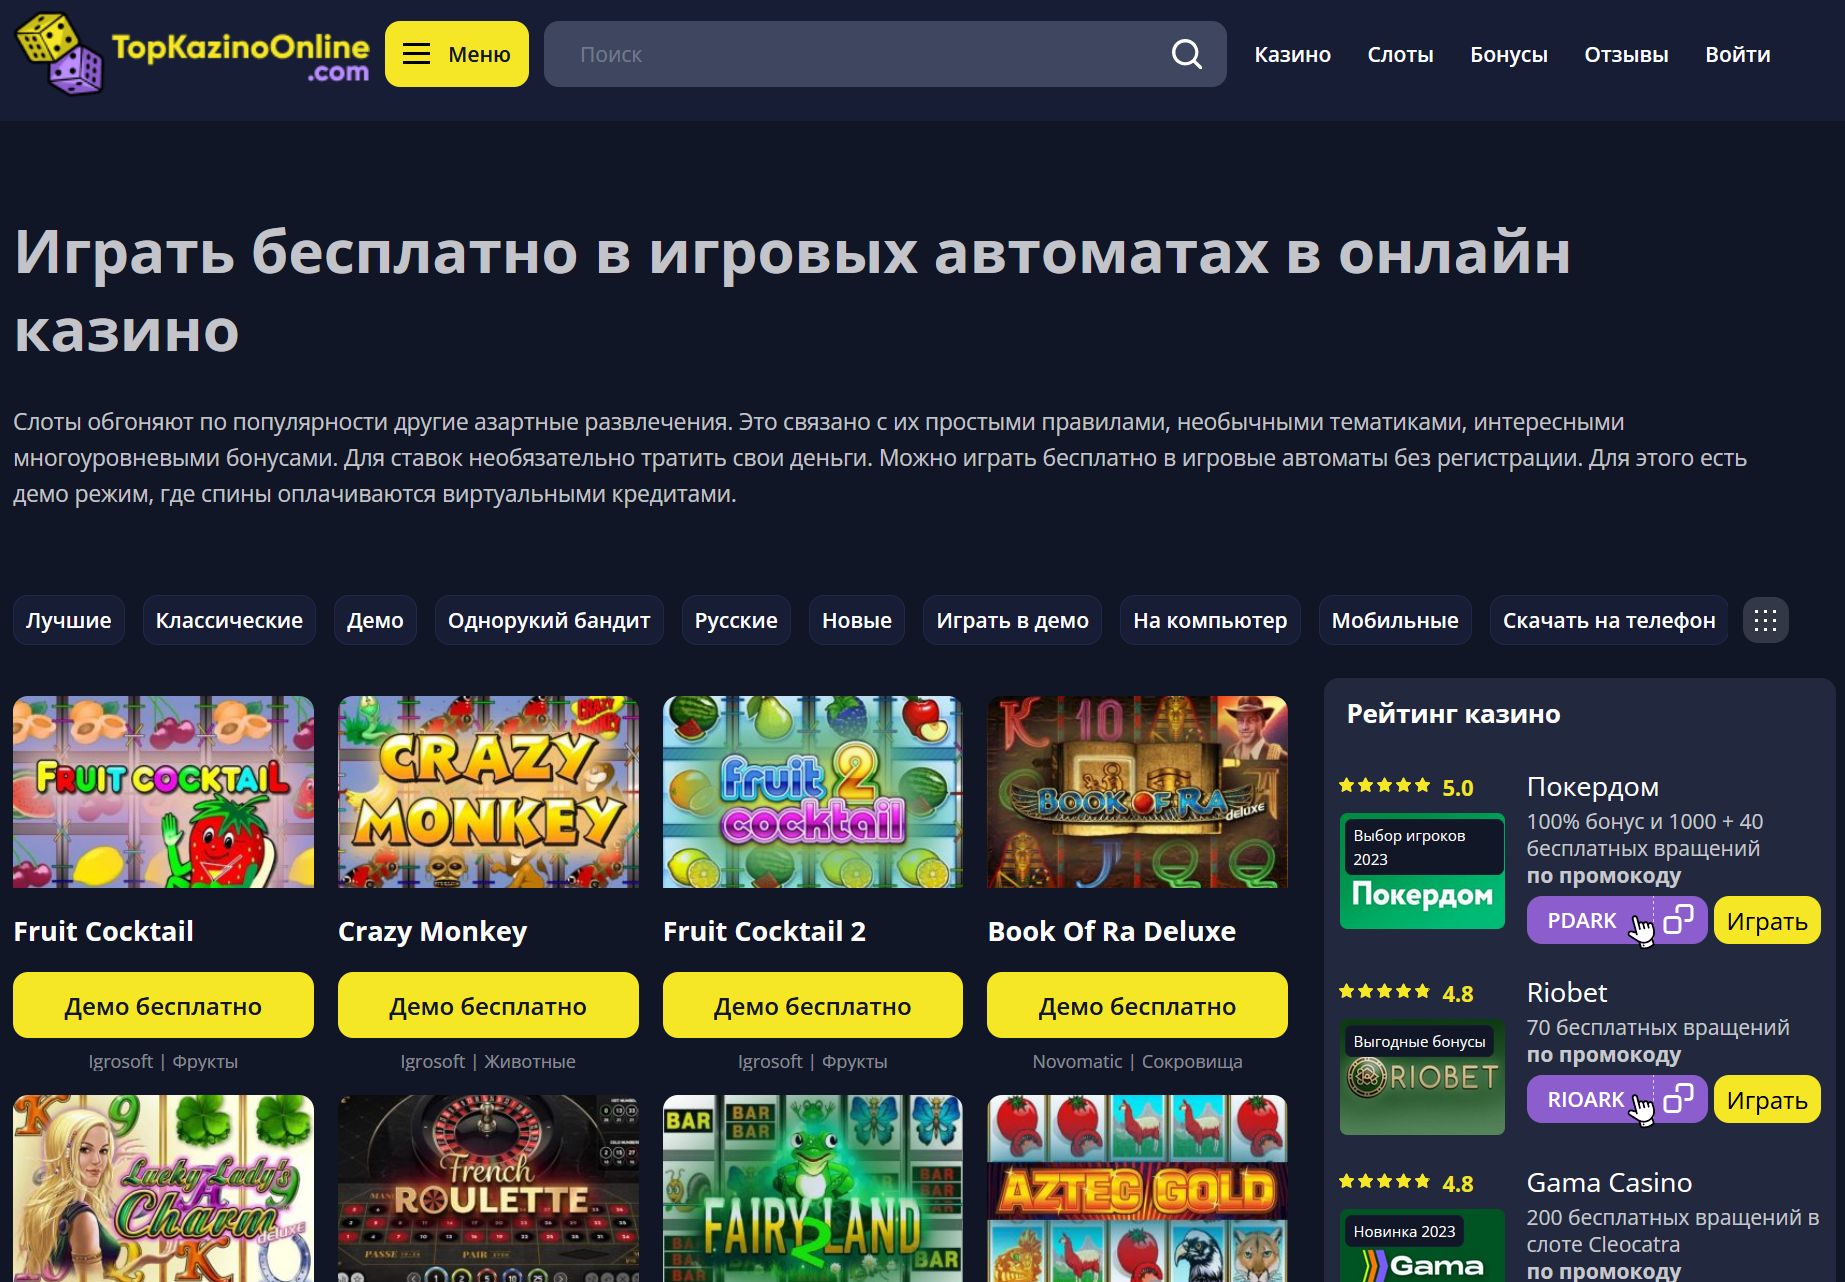 Full version of Android Casino table games game apk Бесплатные игровые автоматы: как выбрать лучший слот для игры? for tablet and phone.